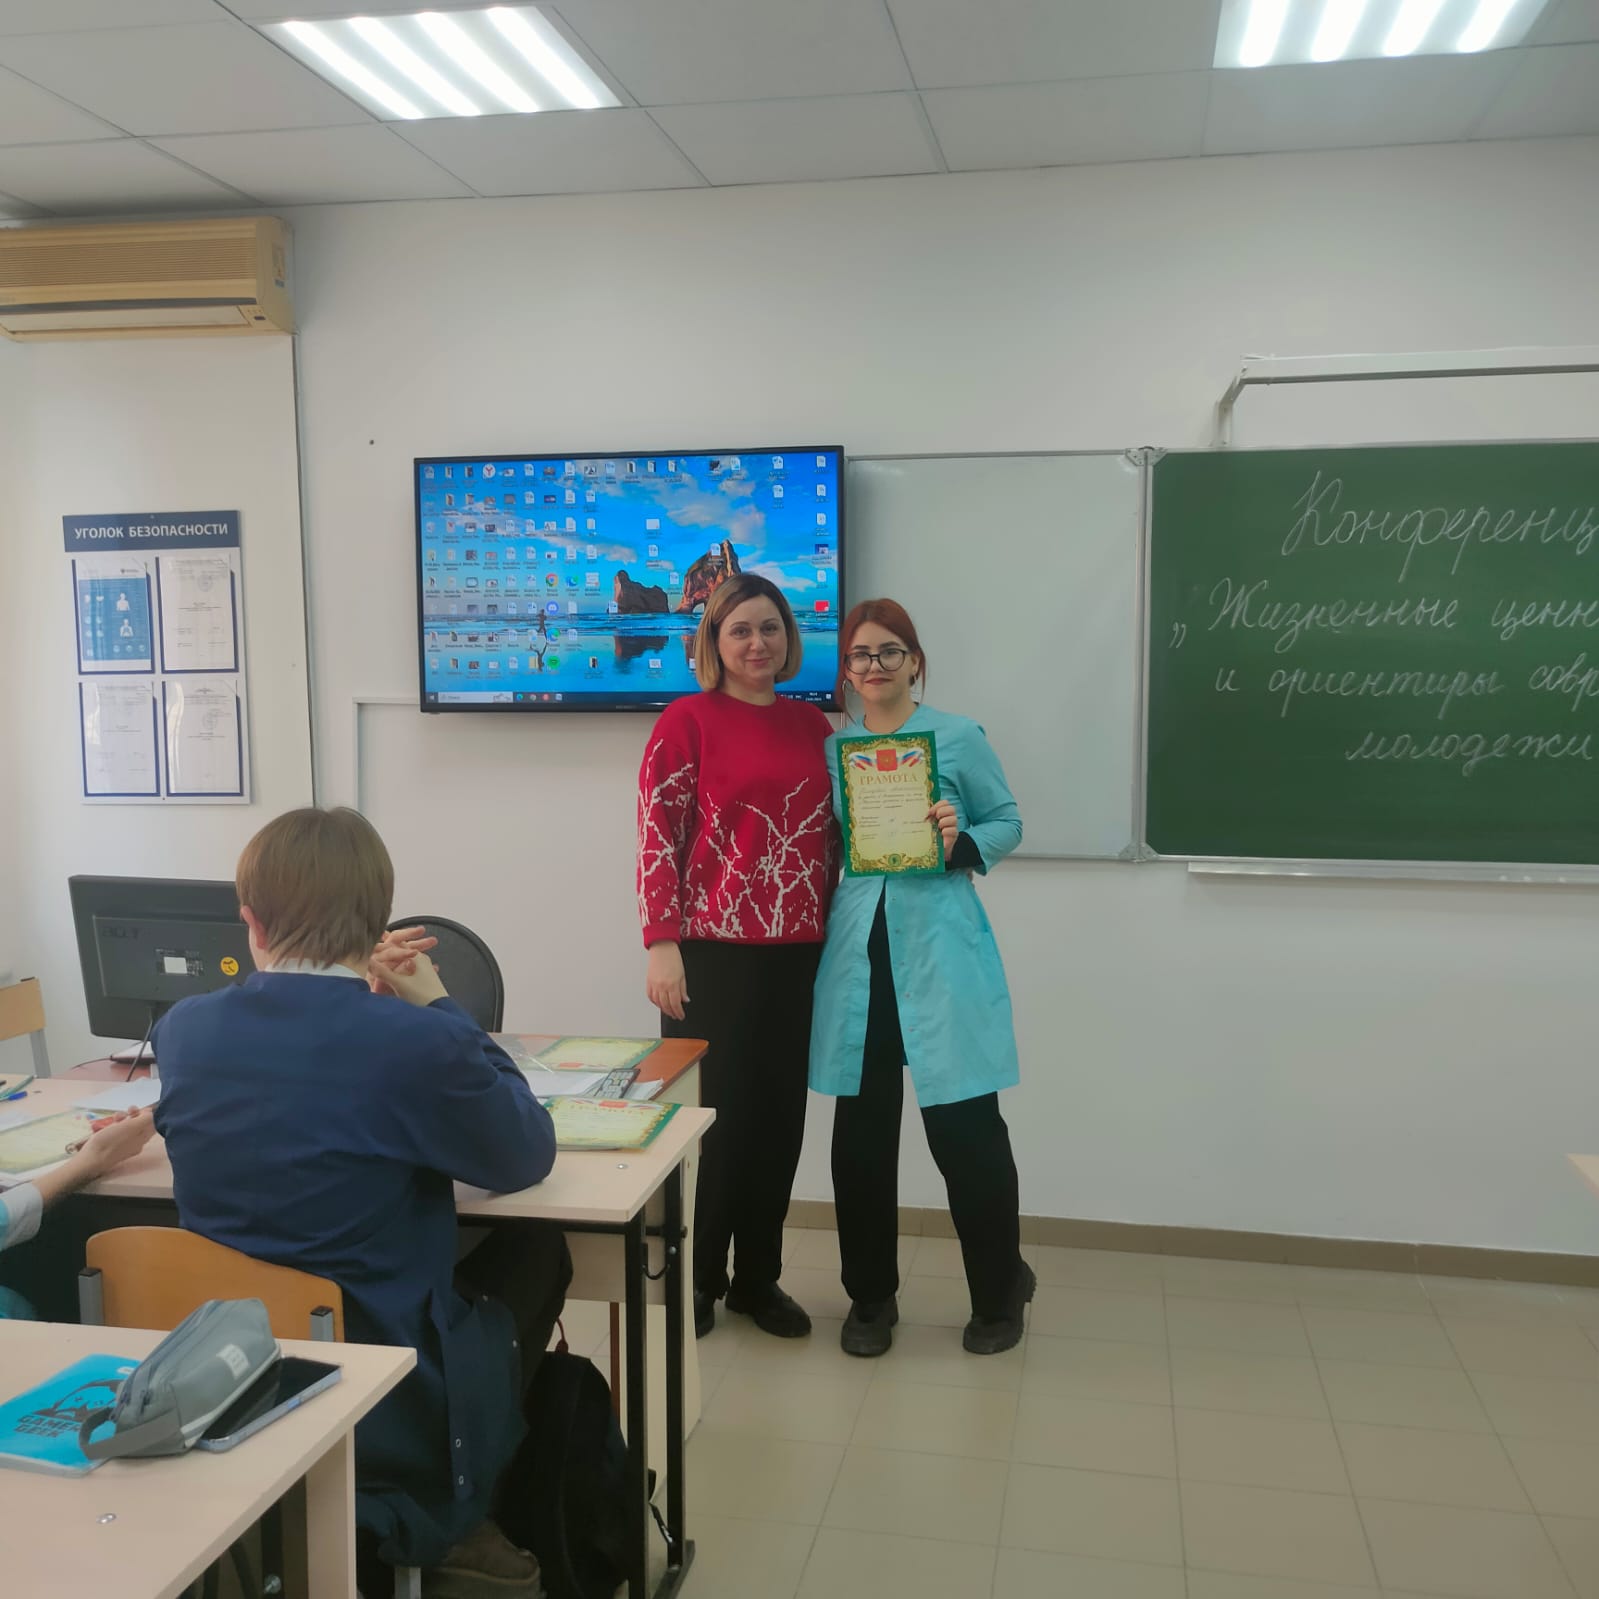 Кольцова Анастасия получила грамоту за участие в конференции